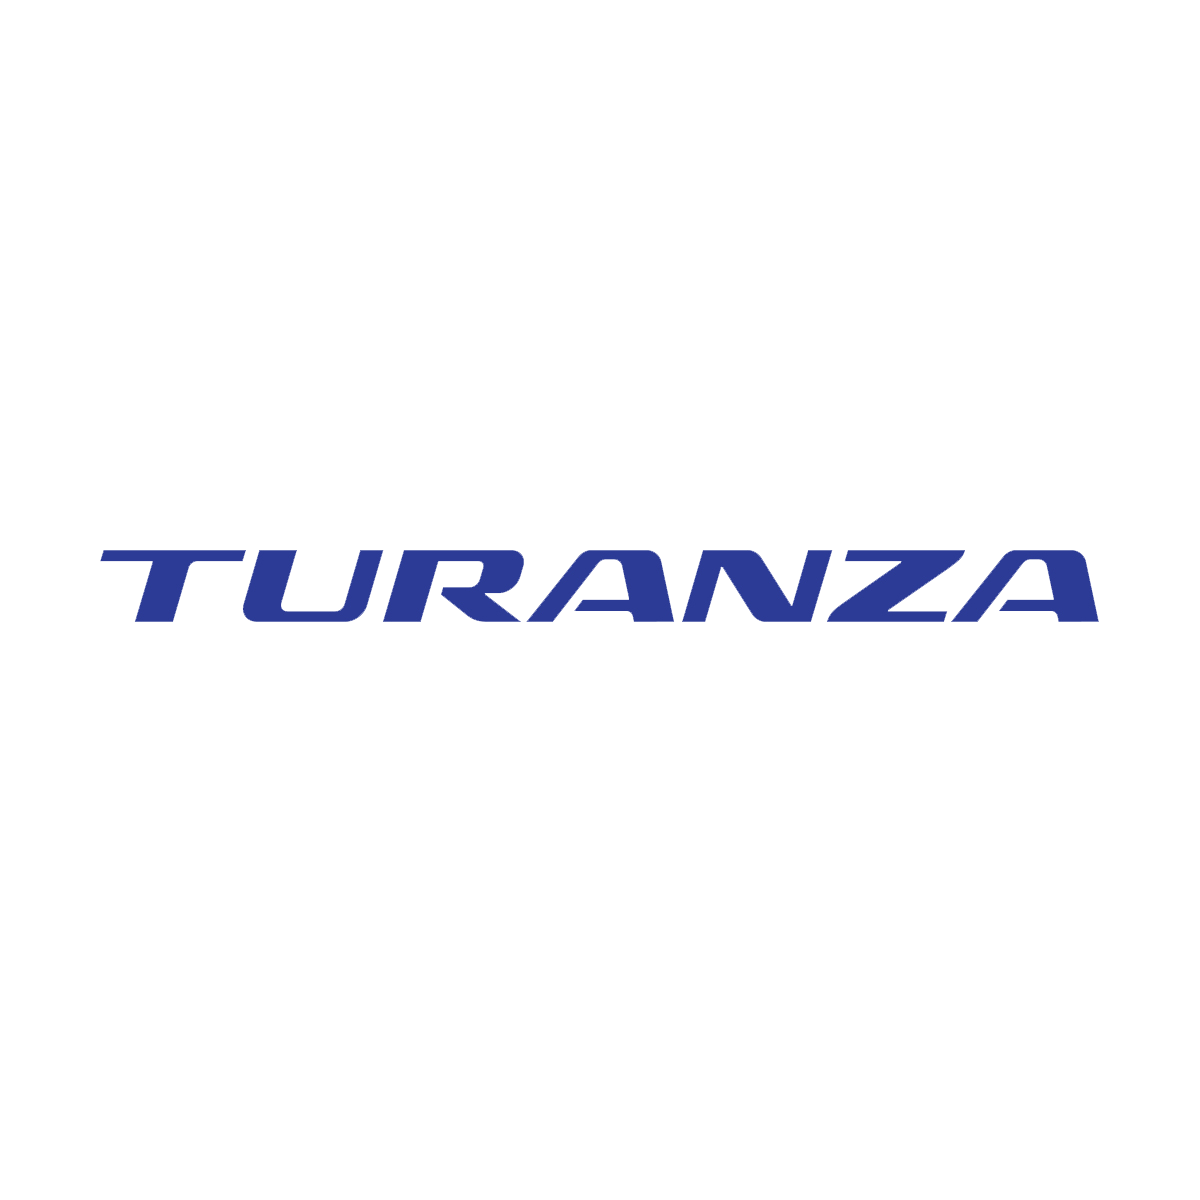 Logo_Turanza02